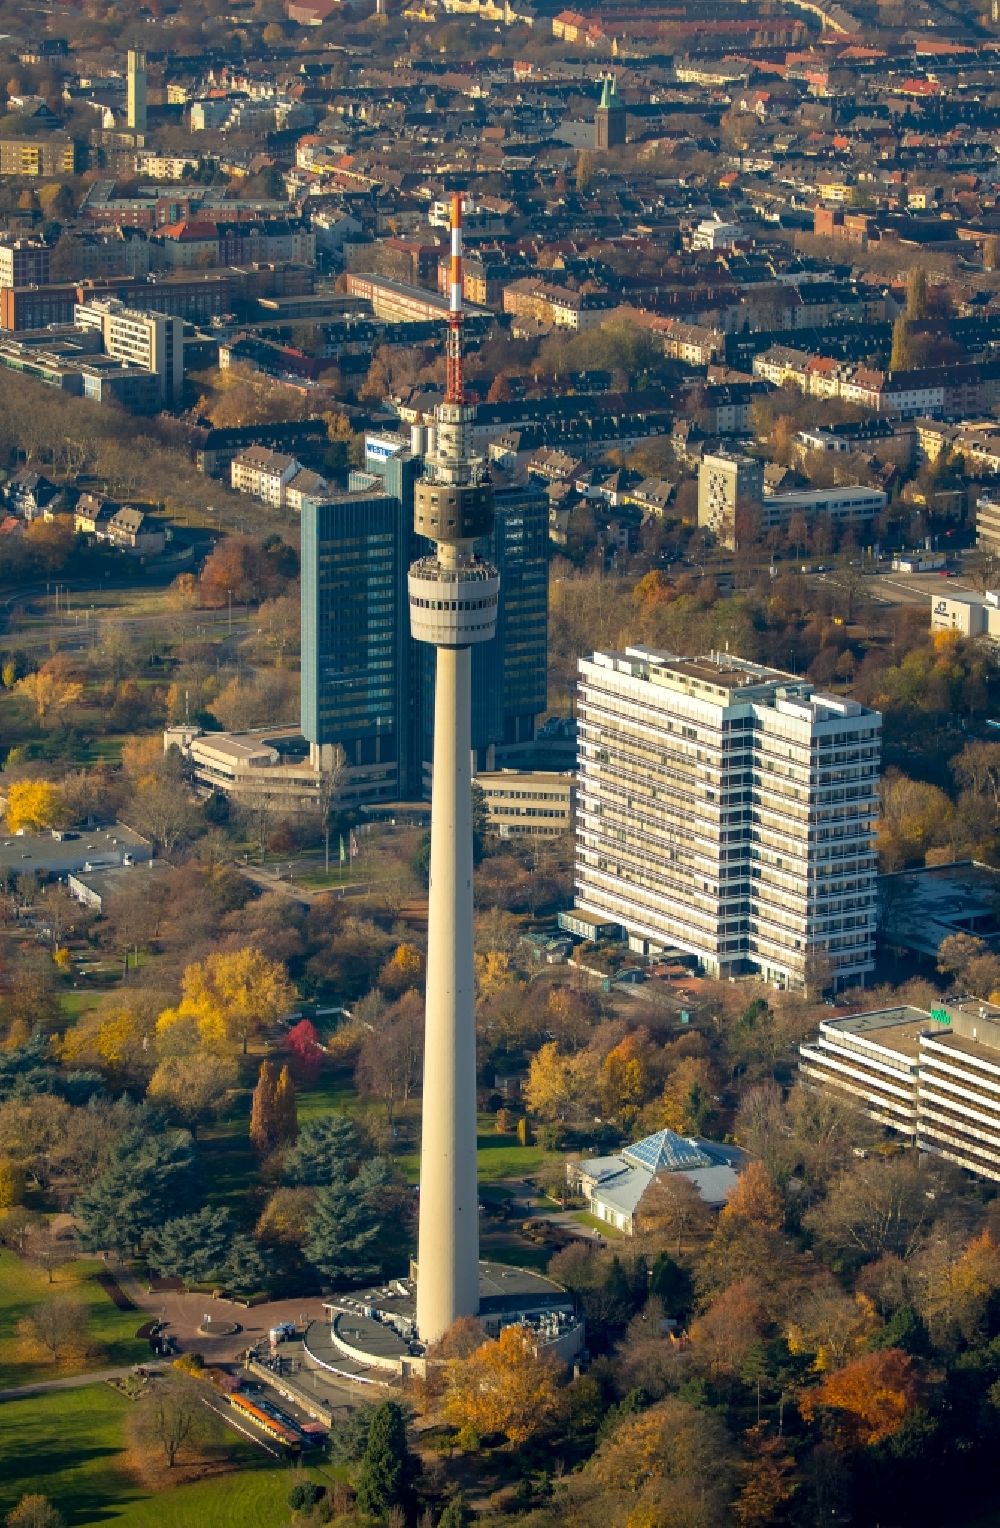 Luftbild Dortmund - Herbstluftbild Fernmeldeturm und Fernsehturm Florianturm in Dortmund im Bundesland Nordrhein-Westfalen, Deutschland